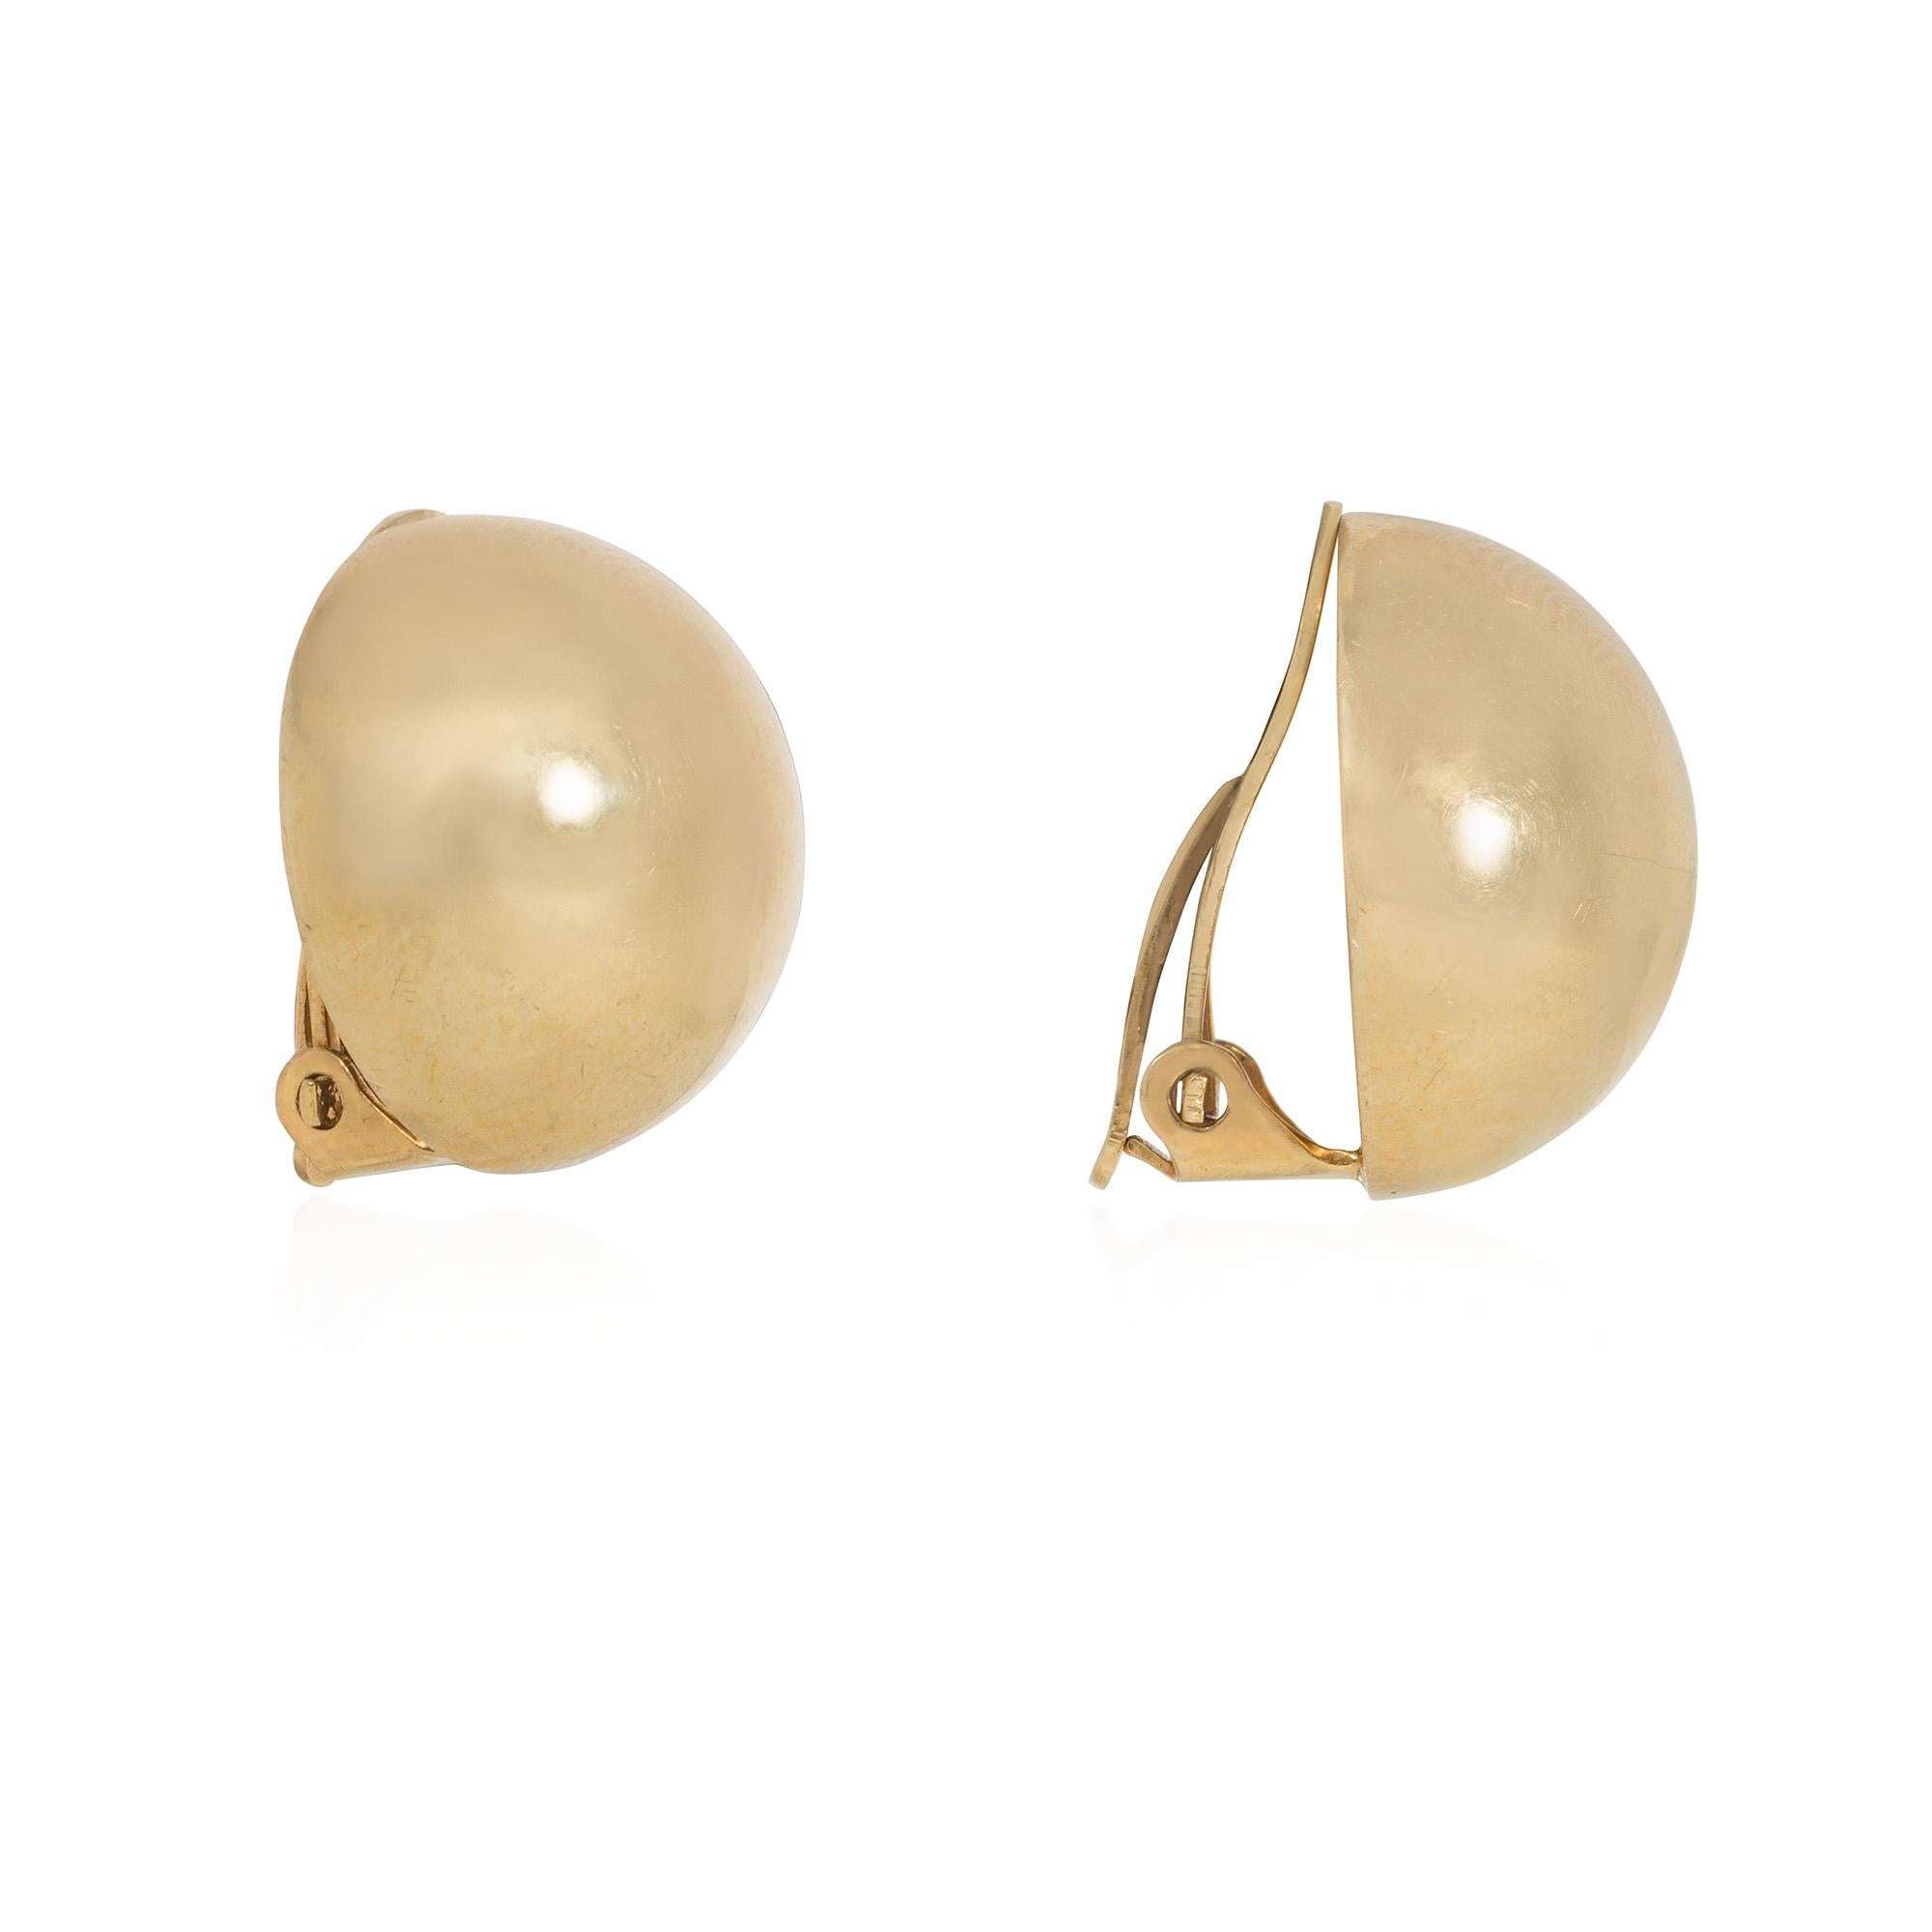 Paire de boucles d'oreilles Retro en or, de forme bombée, avec fermoir à clip, en 14k. Tiffany & Co.  Un look classique et sur mesure qui ne se démode jamais !


